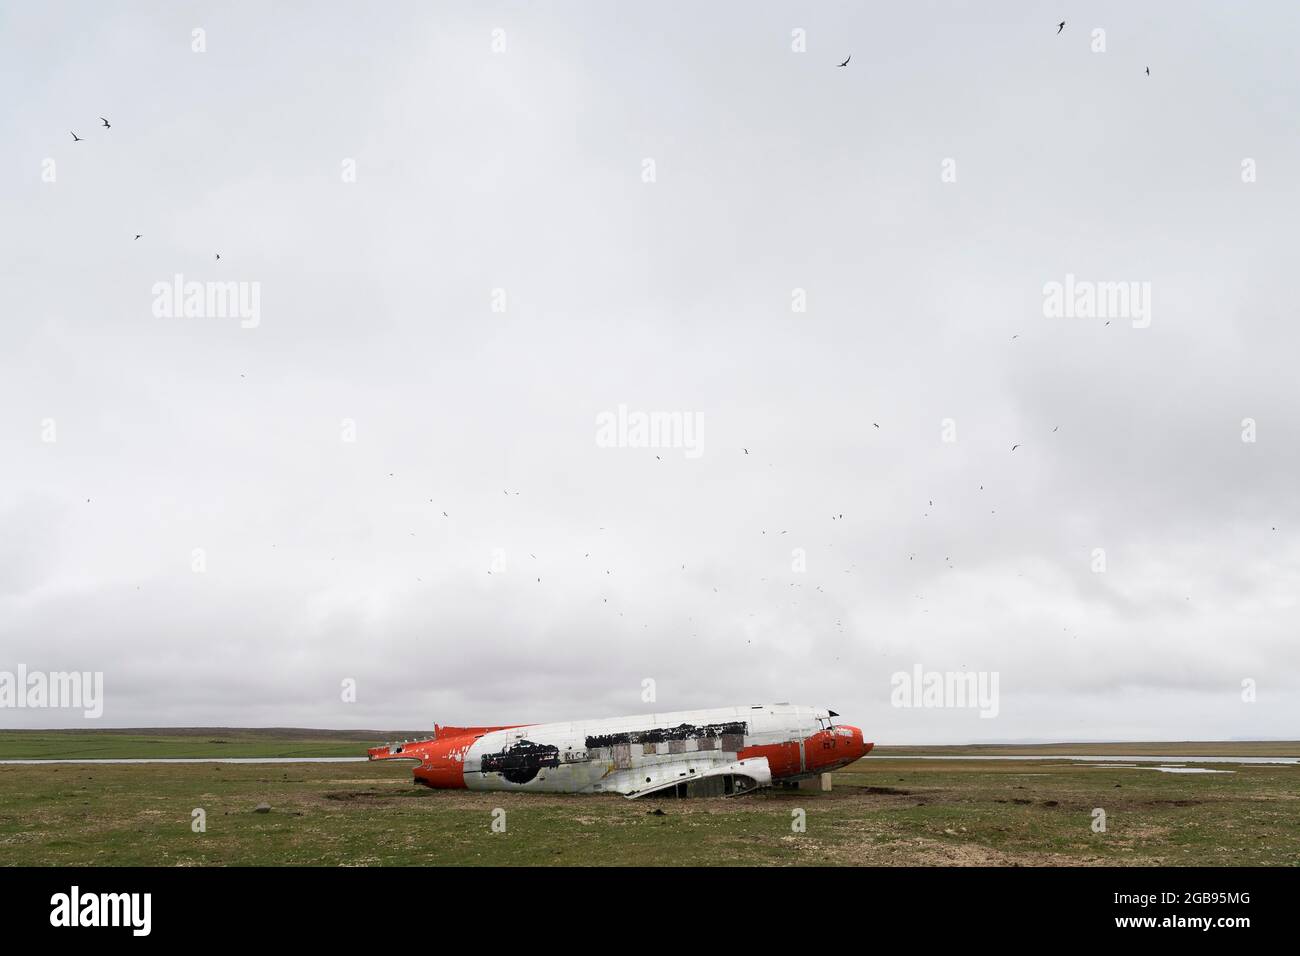 Aereo di trasporto dell'aeronautica americana atterrato in emergenza Douglas R4D-6 41-50187, ora un riparo per pecore, vicino a Porshoefn, Sauoanes, Langanes Foto Stock